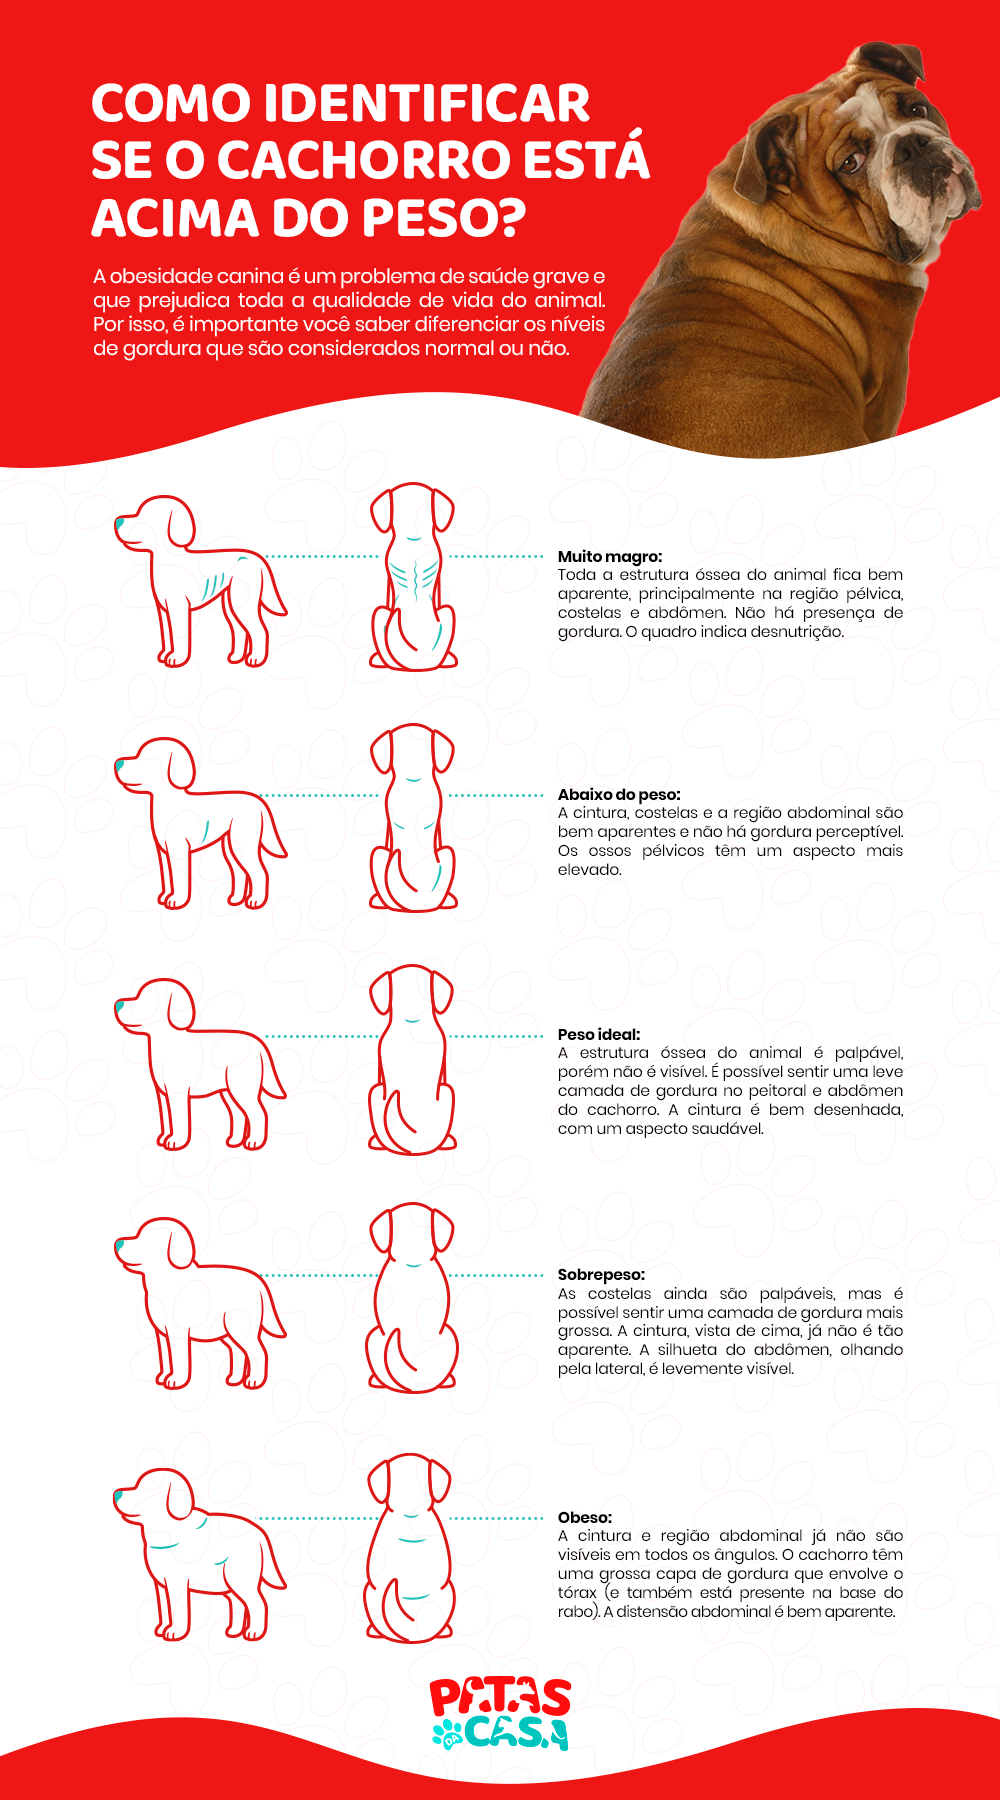  سمنة الكلاب: يعلمك مخطط المعلومات الرسومي كيفية التفريق بين الكلب البدين والحيوان السليم